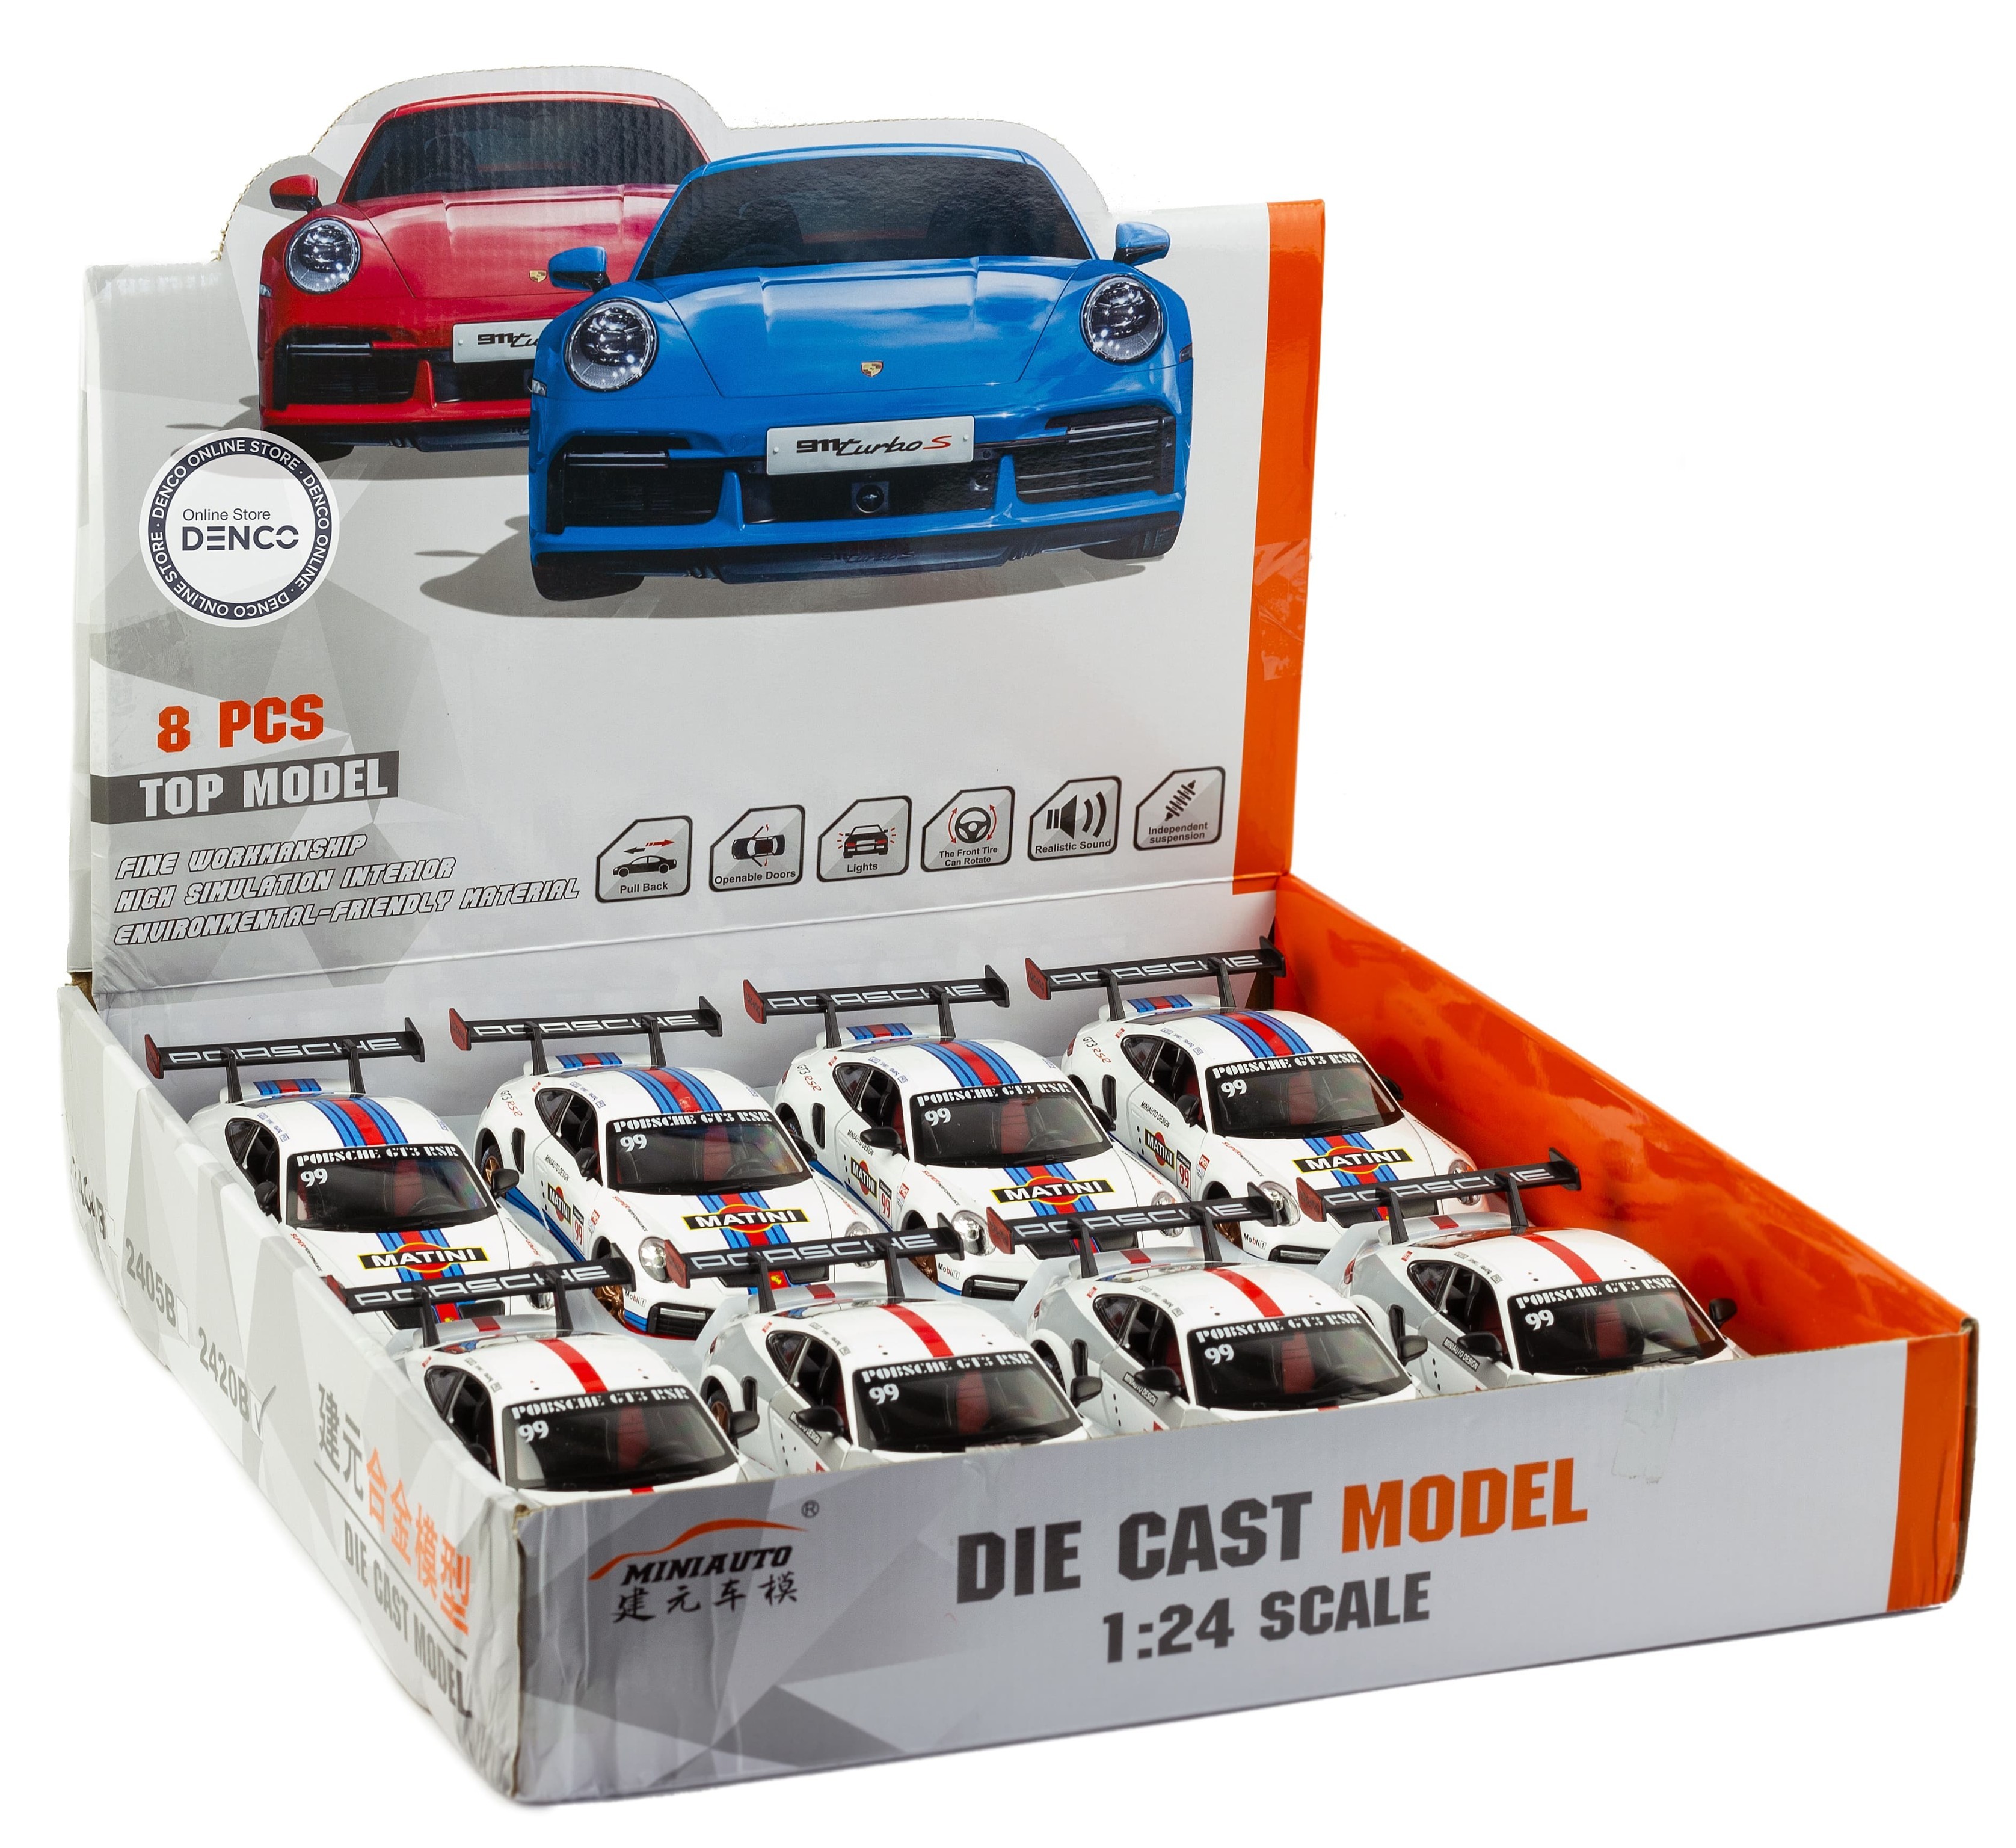 Металлическая машинка Mini Auto 1:24 «Porsche 911 GT3 RSR» 2420B, 20 см., инерционная, свет, звук / Бело-серый